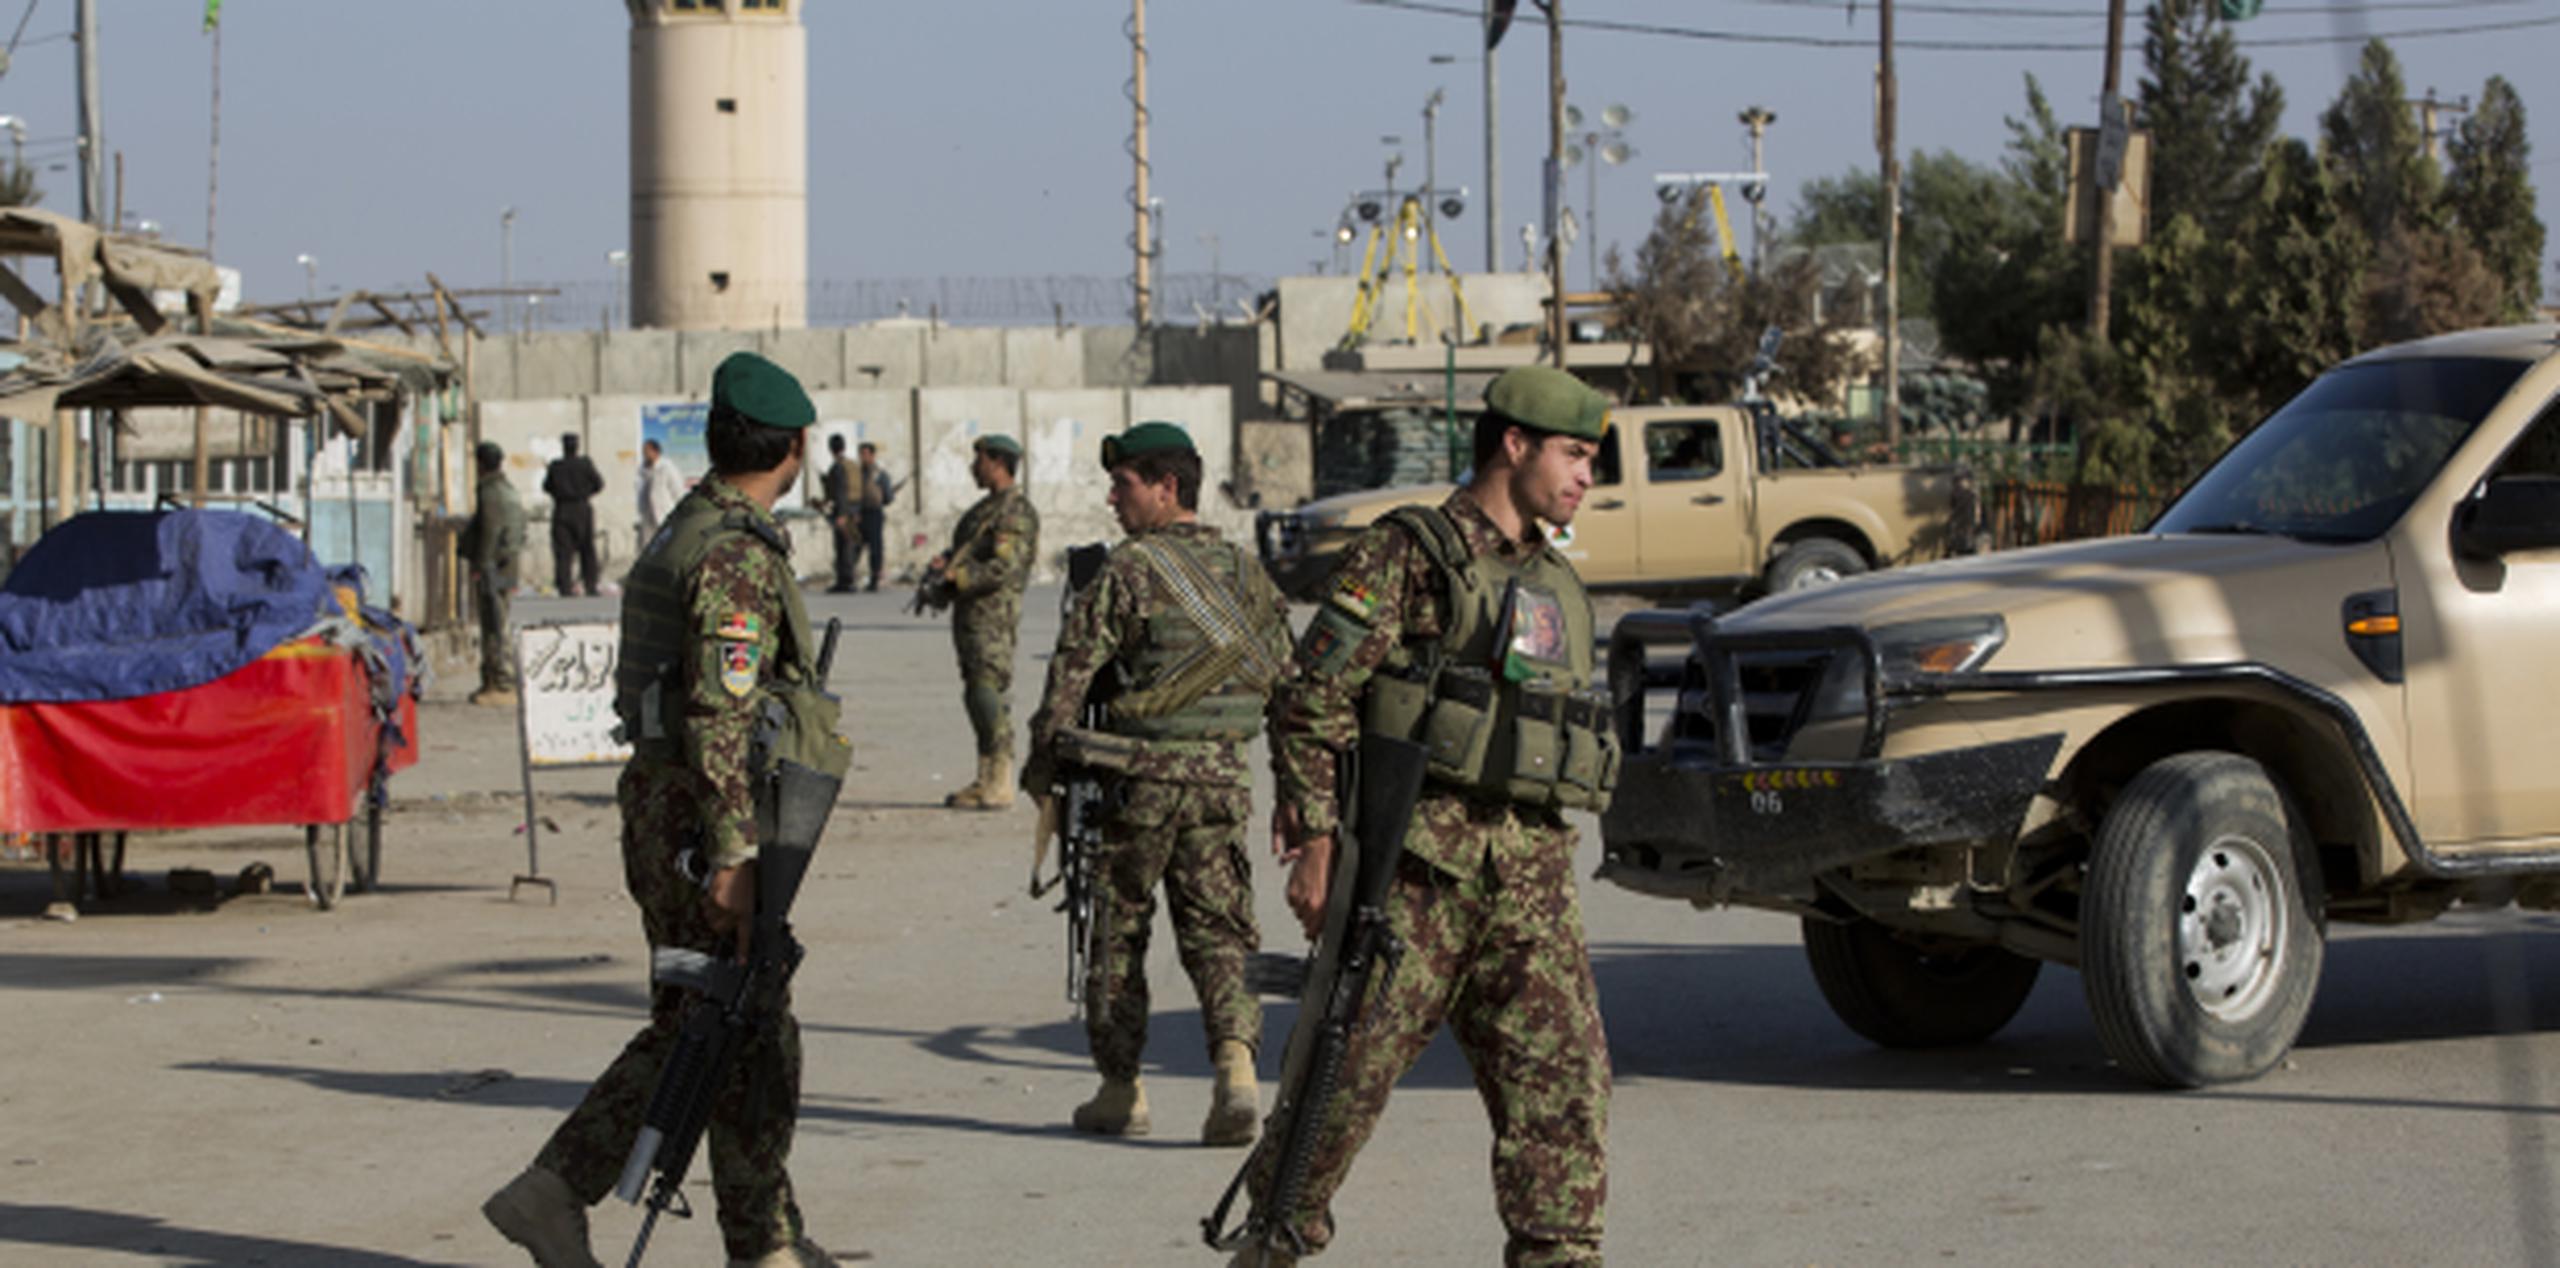 Soldados estadounidenses vigilan los alrededores del aerodromo de Bagram, al norte de Kabul, donde este sábado ocurrió un ataque que mató a cuatro personas. (AP/Massoud Hossaini)